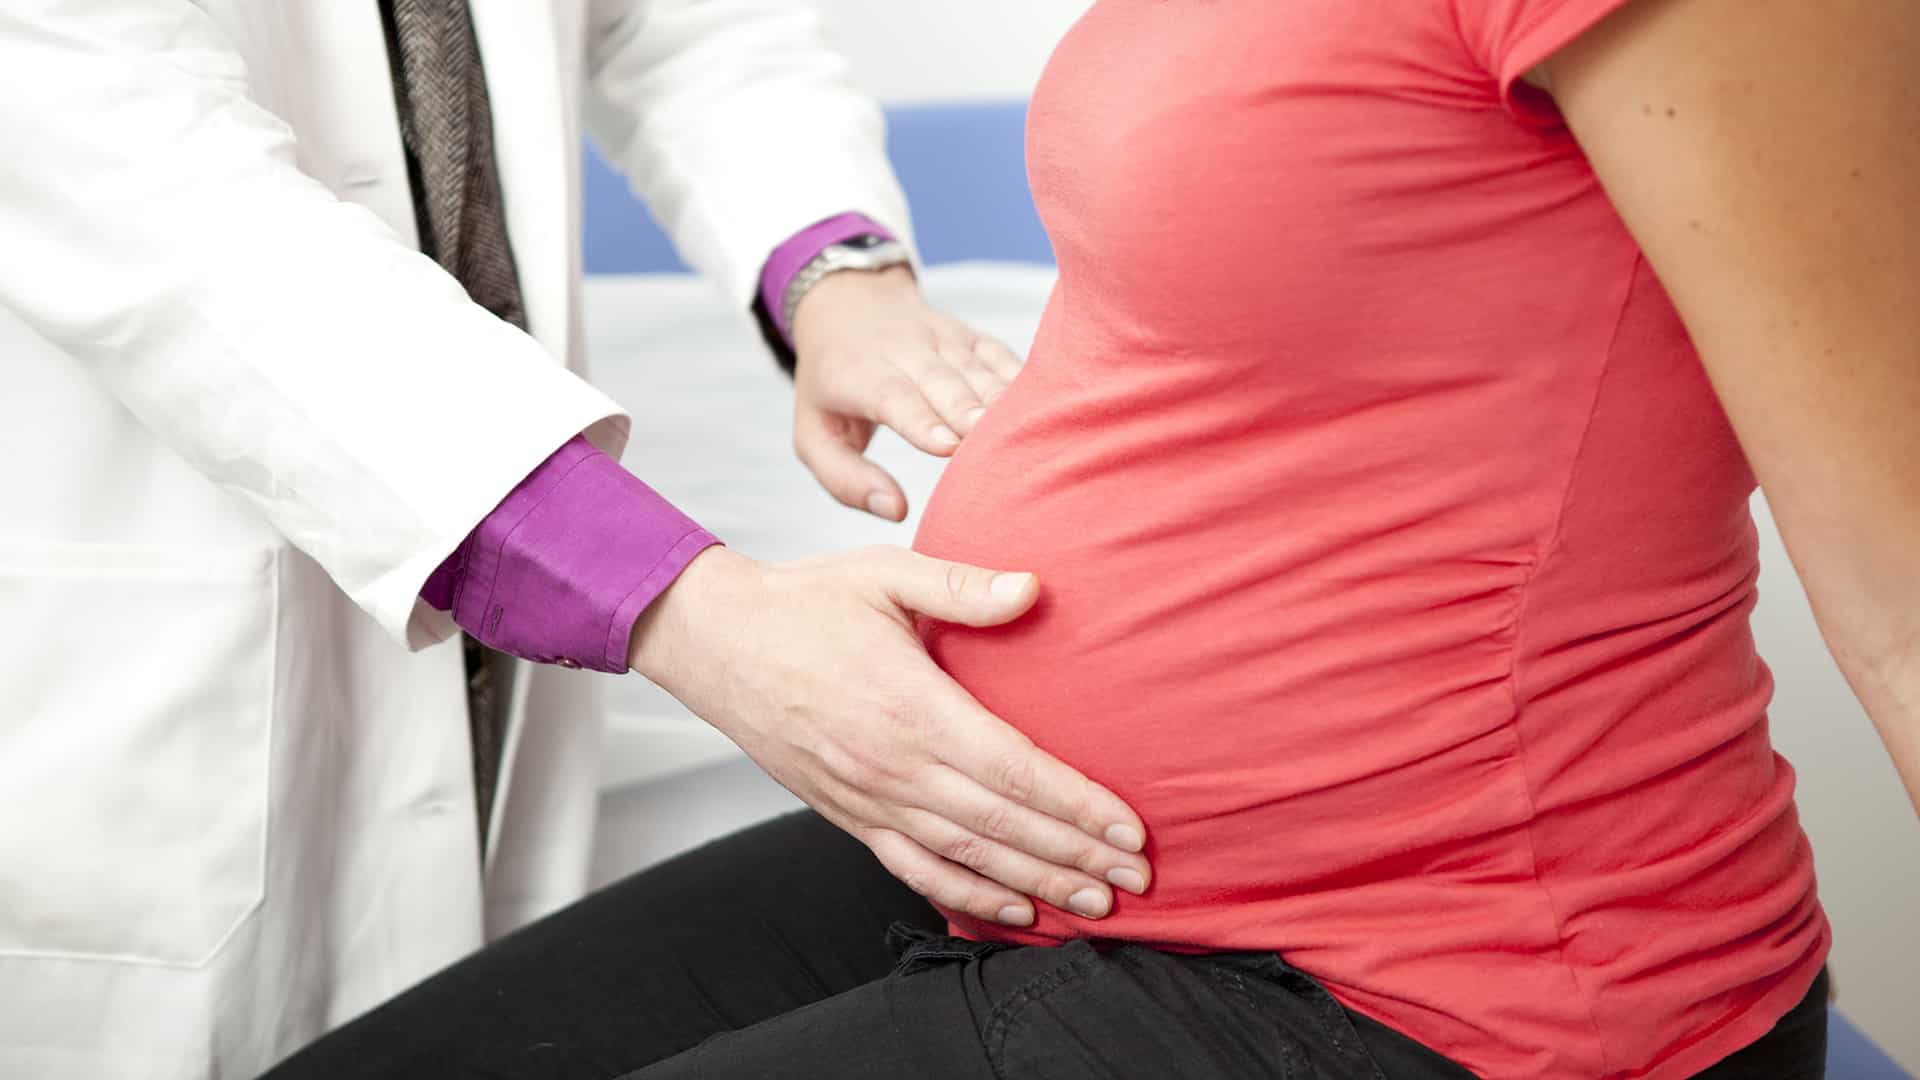 8 علامات اذا حدثت لك بعد موعد الدورة الشهرية فاعلمي أنك حامل!!